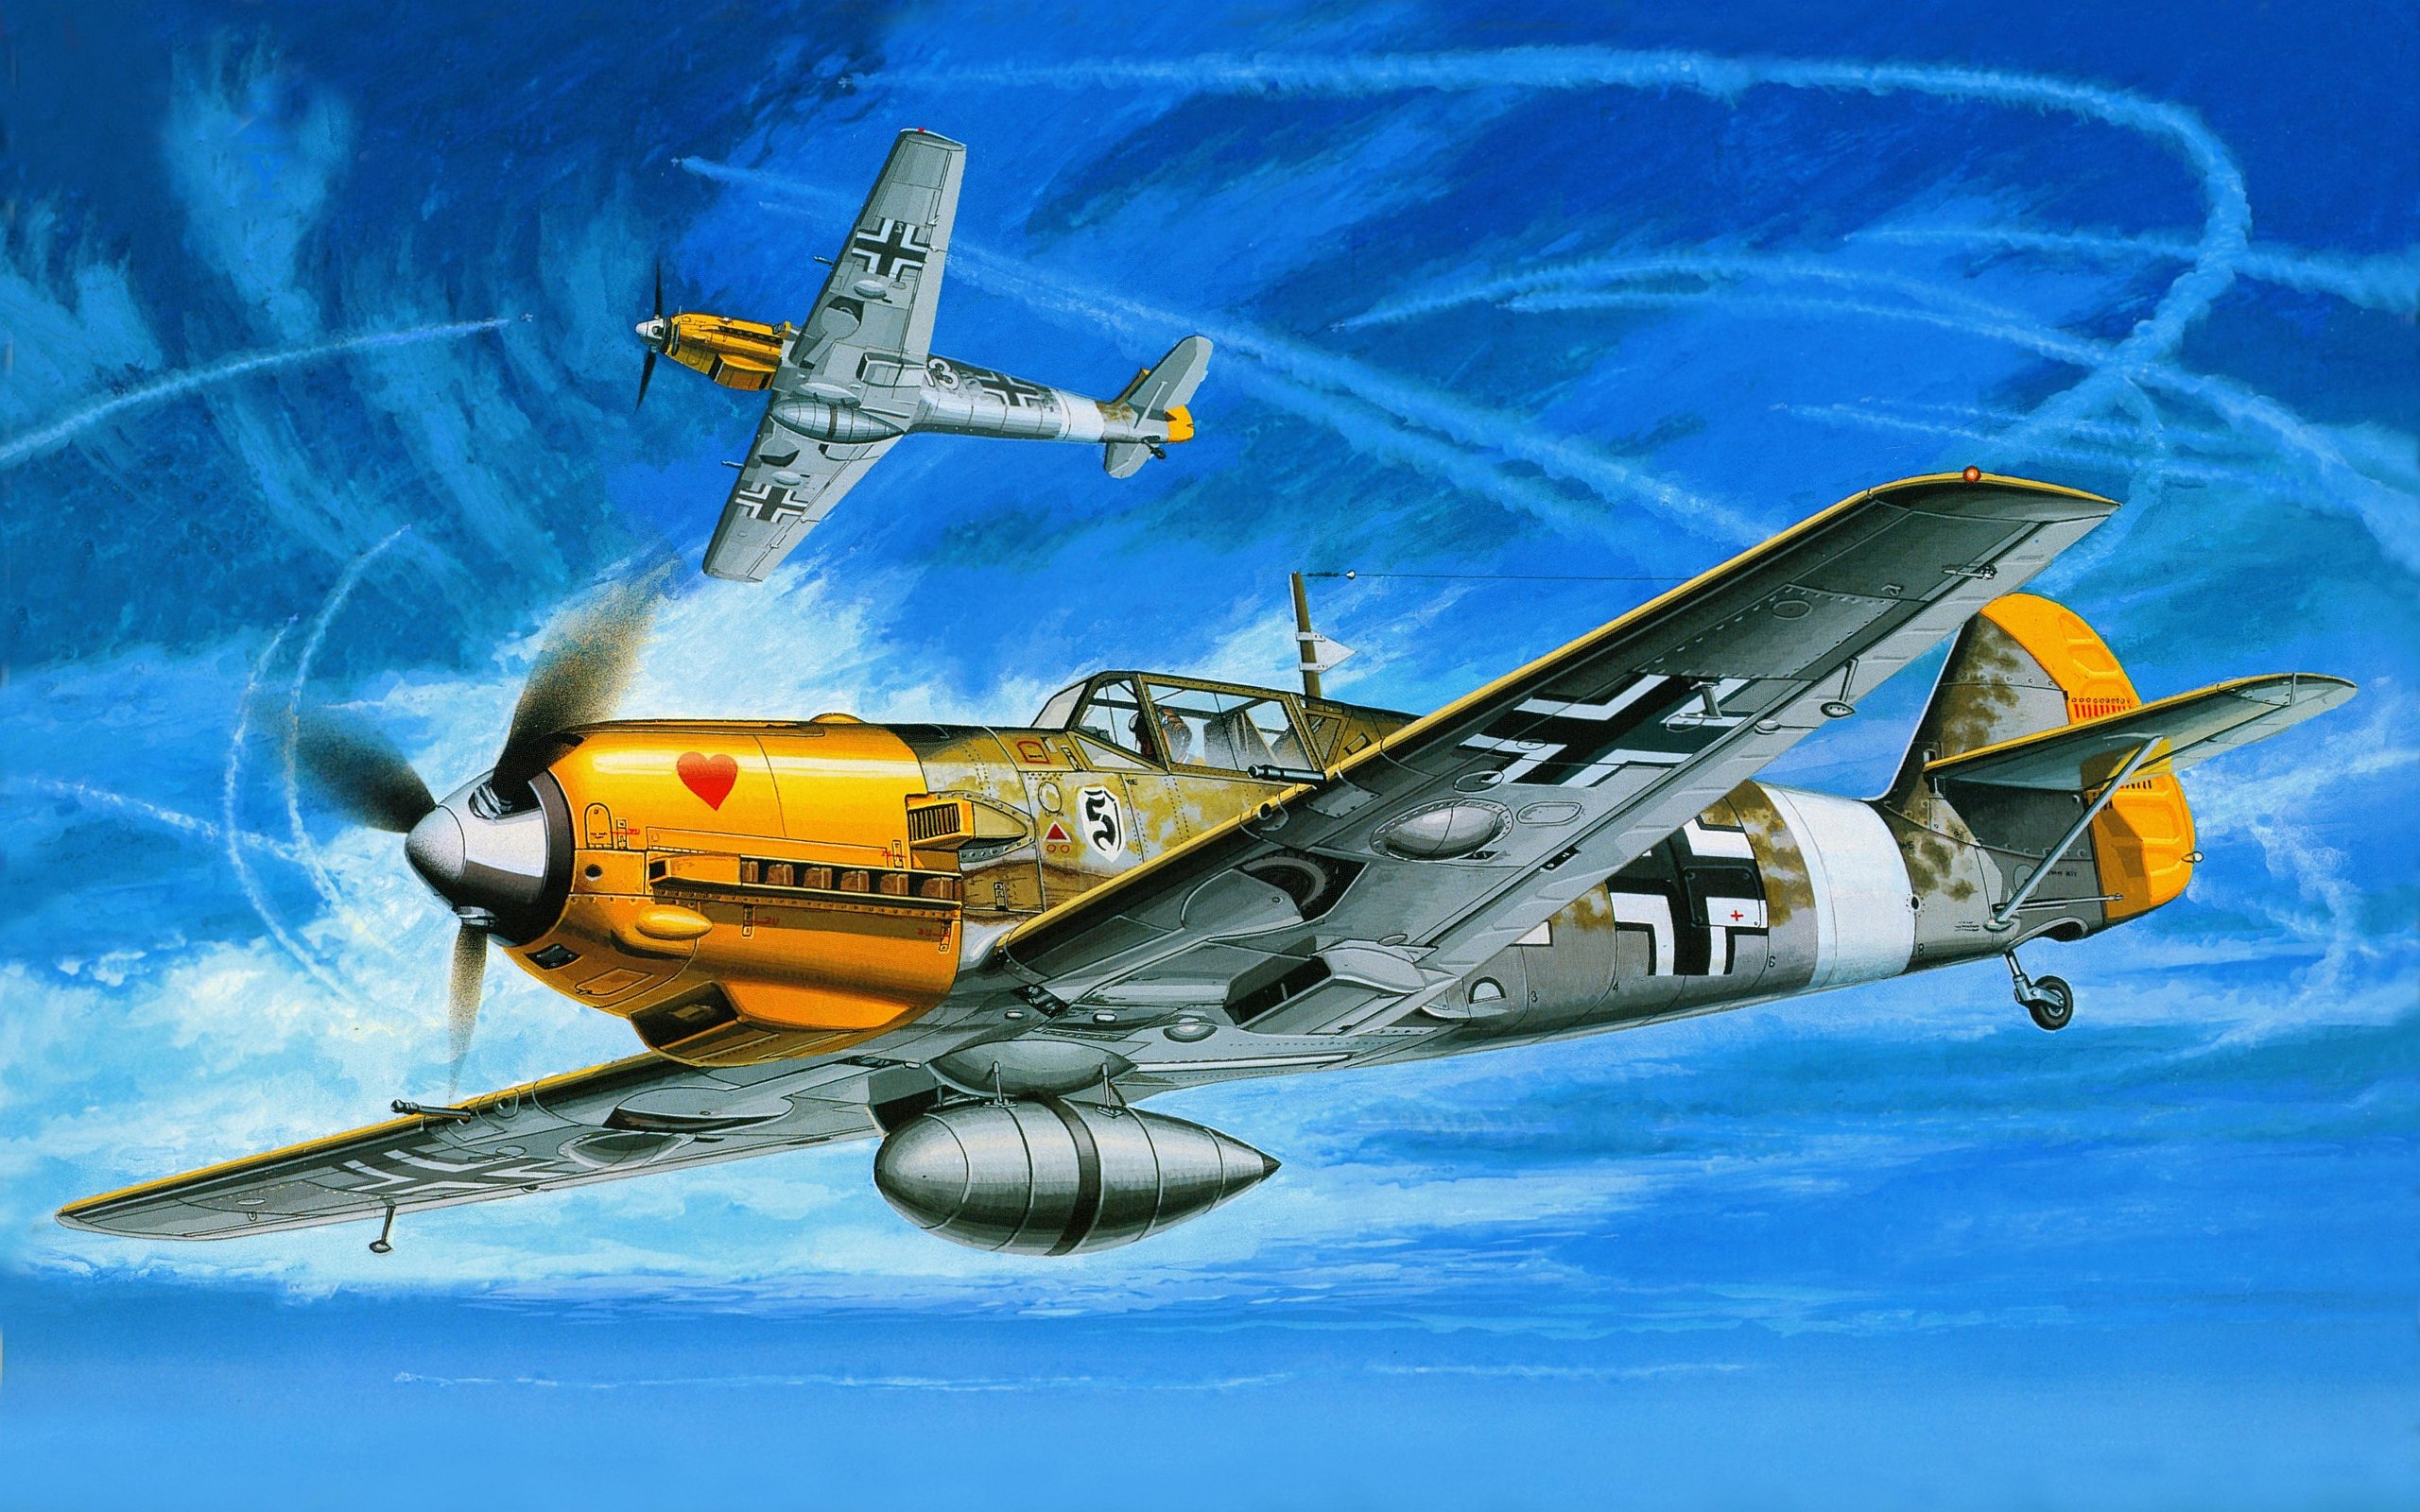 Best Messerschmitt Bf 109 wallpaper ID:157077 for High Resolution hd 2560x1600 desktop